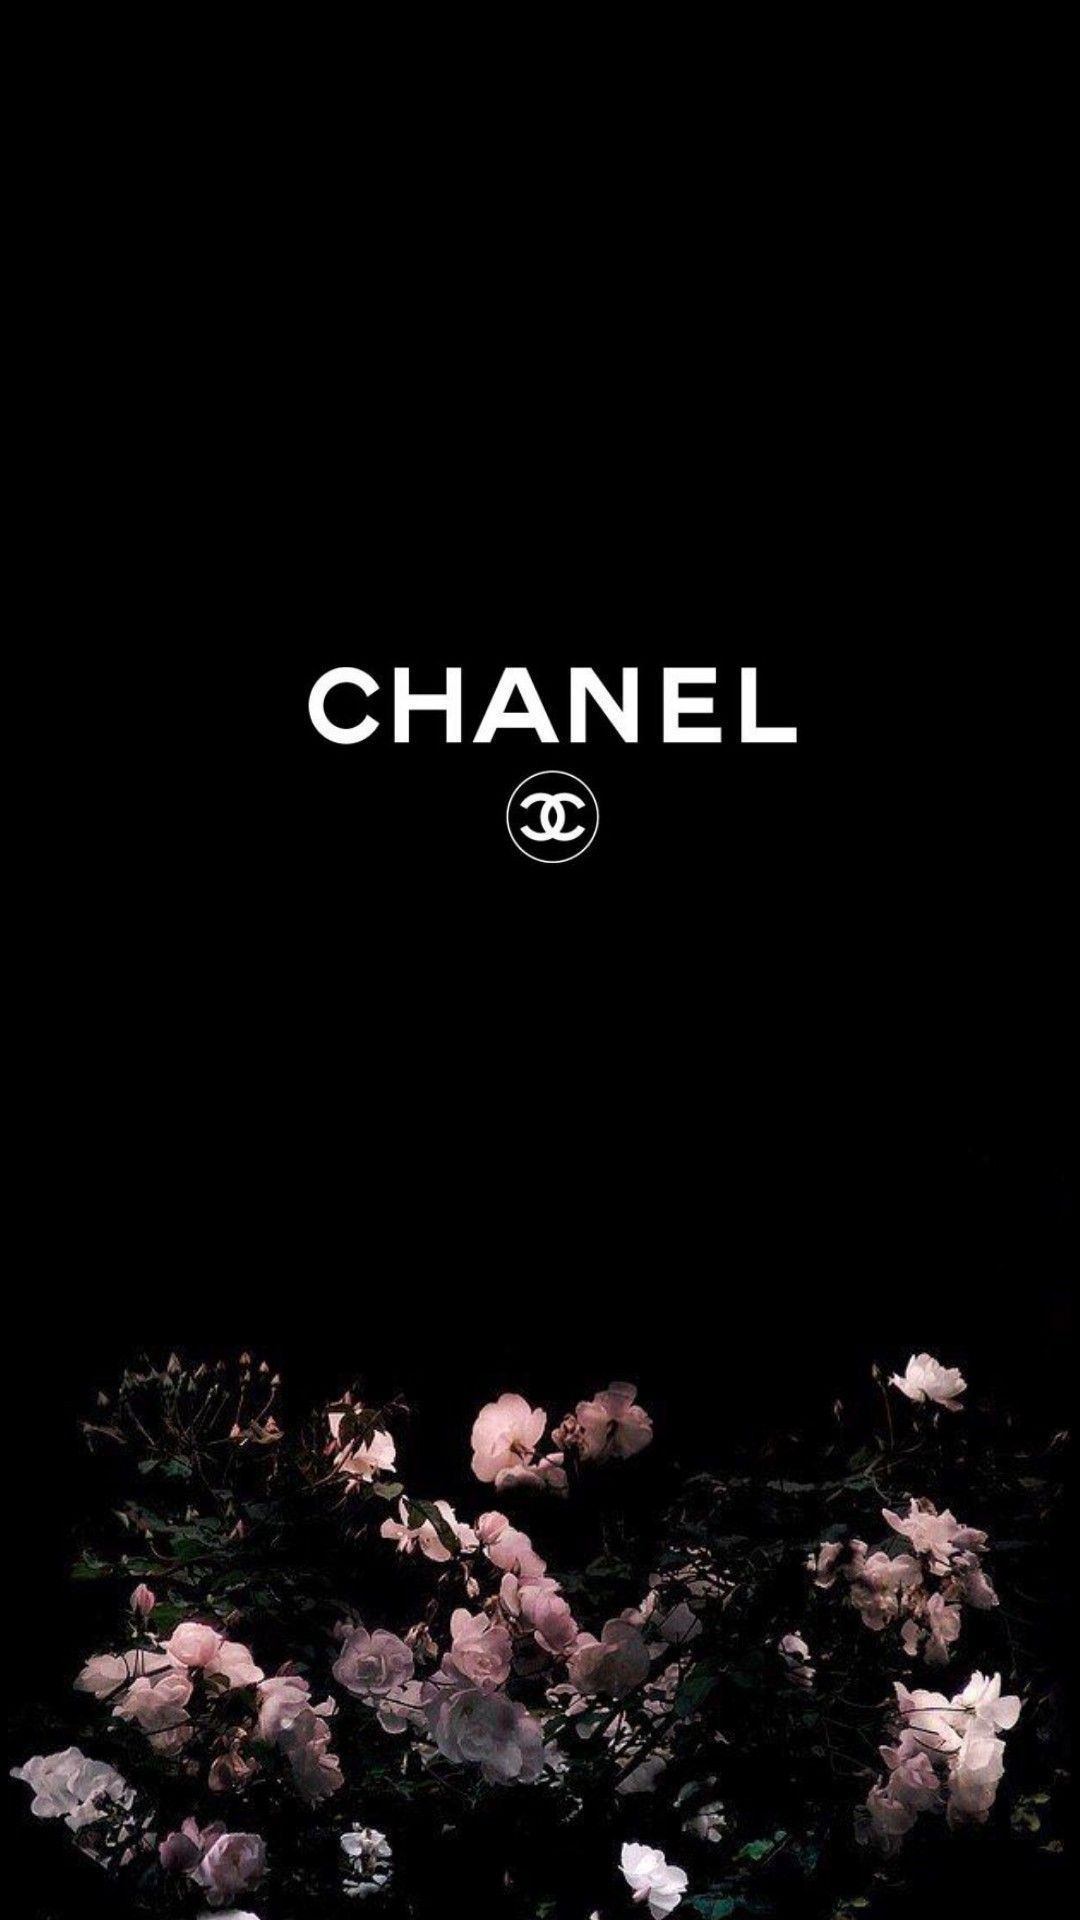 Chanel Aesthetic Wallpapers  Top Những Hình Ảnh Đẹp